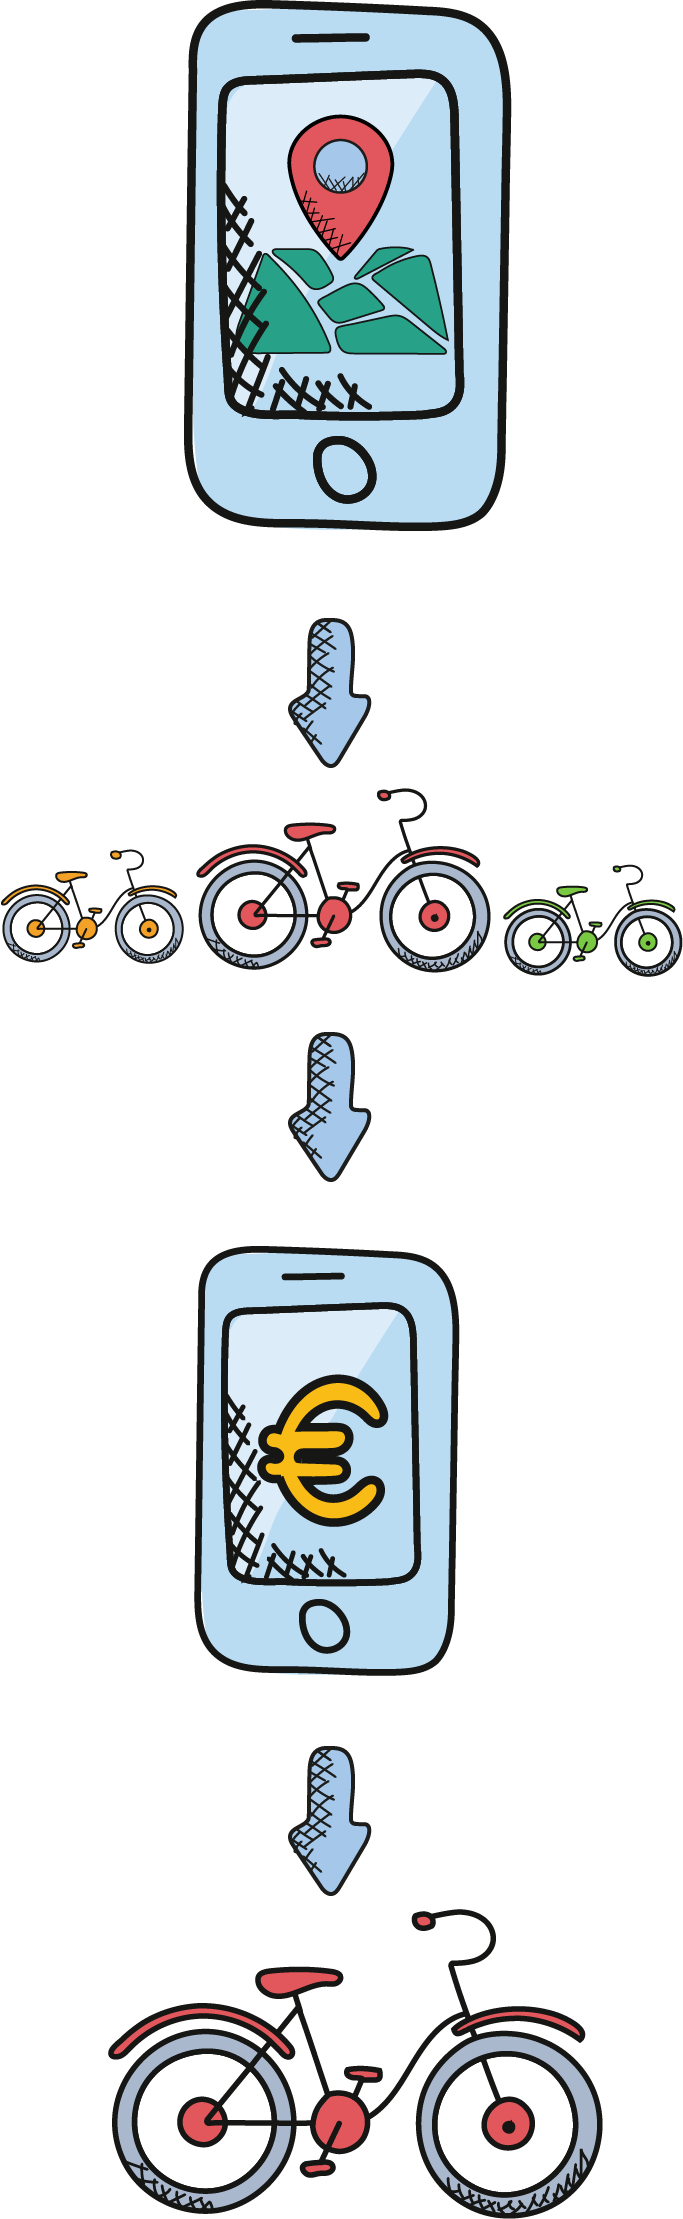 localizzare, sbloccare e pagare il servizio tramite il proprio smartphone per utilizzare il bikesharing